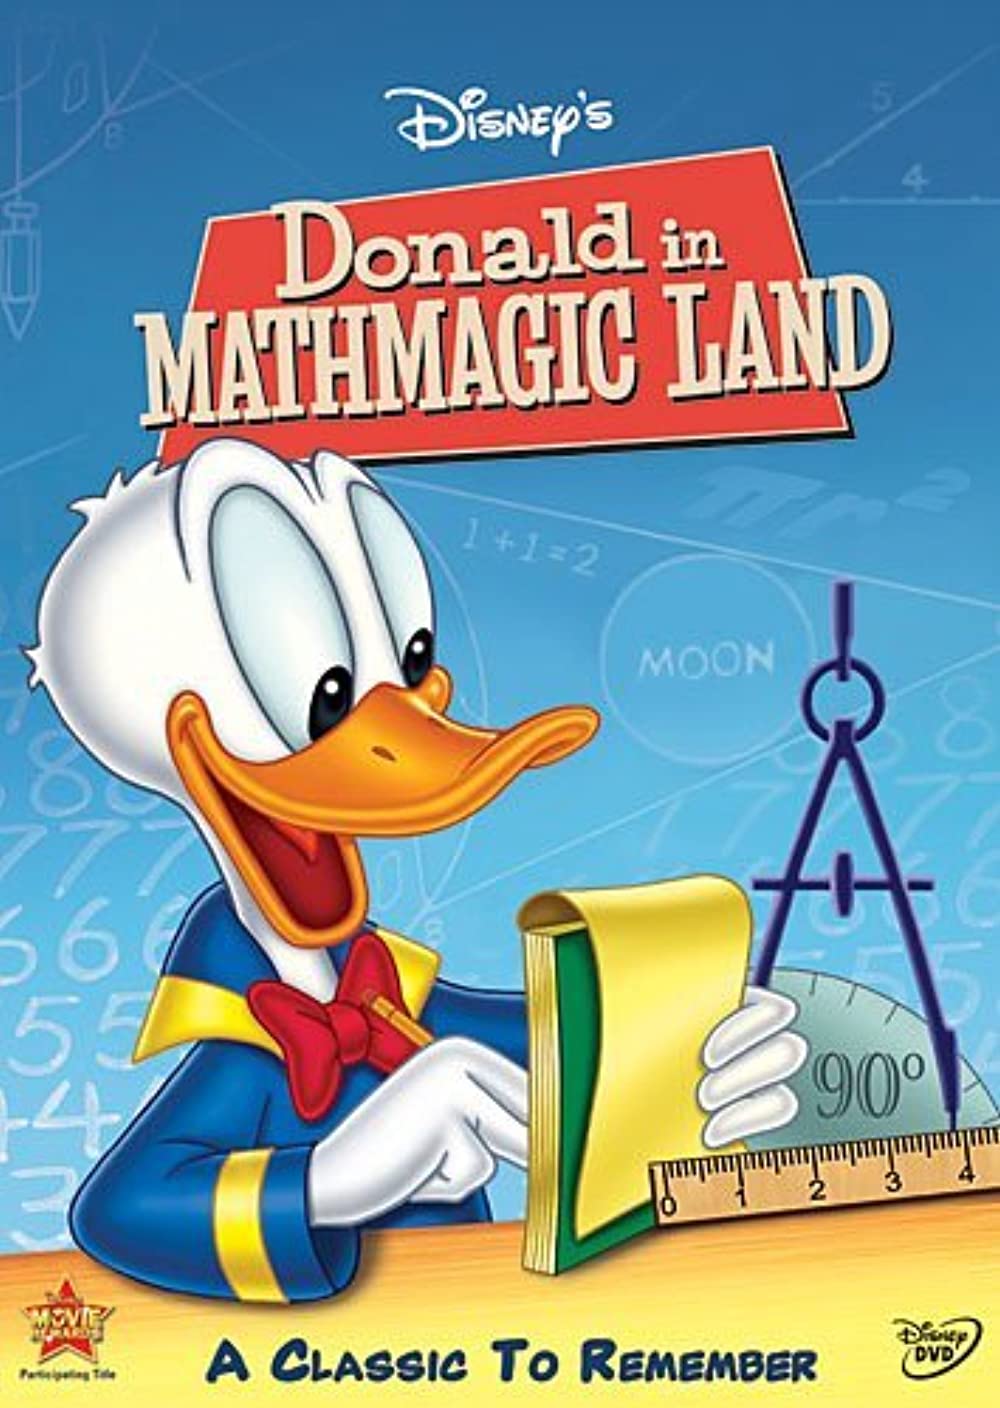 Donald in Mathmagic Land (Short 1959)